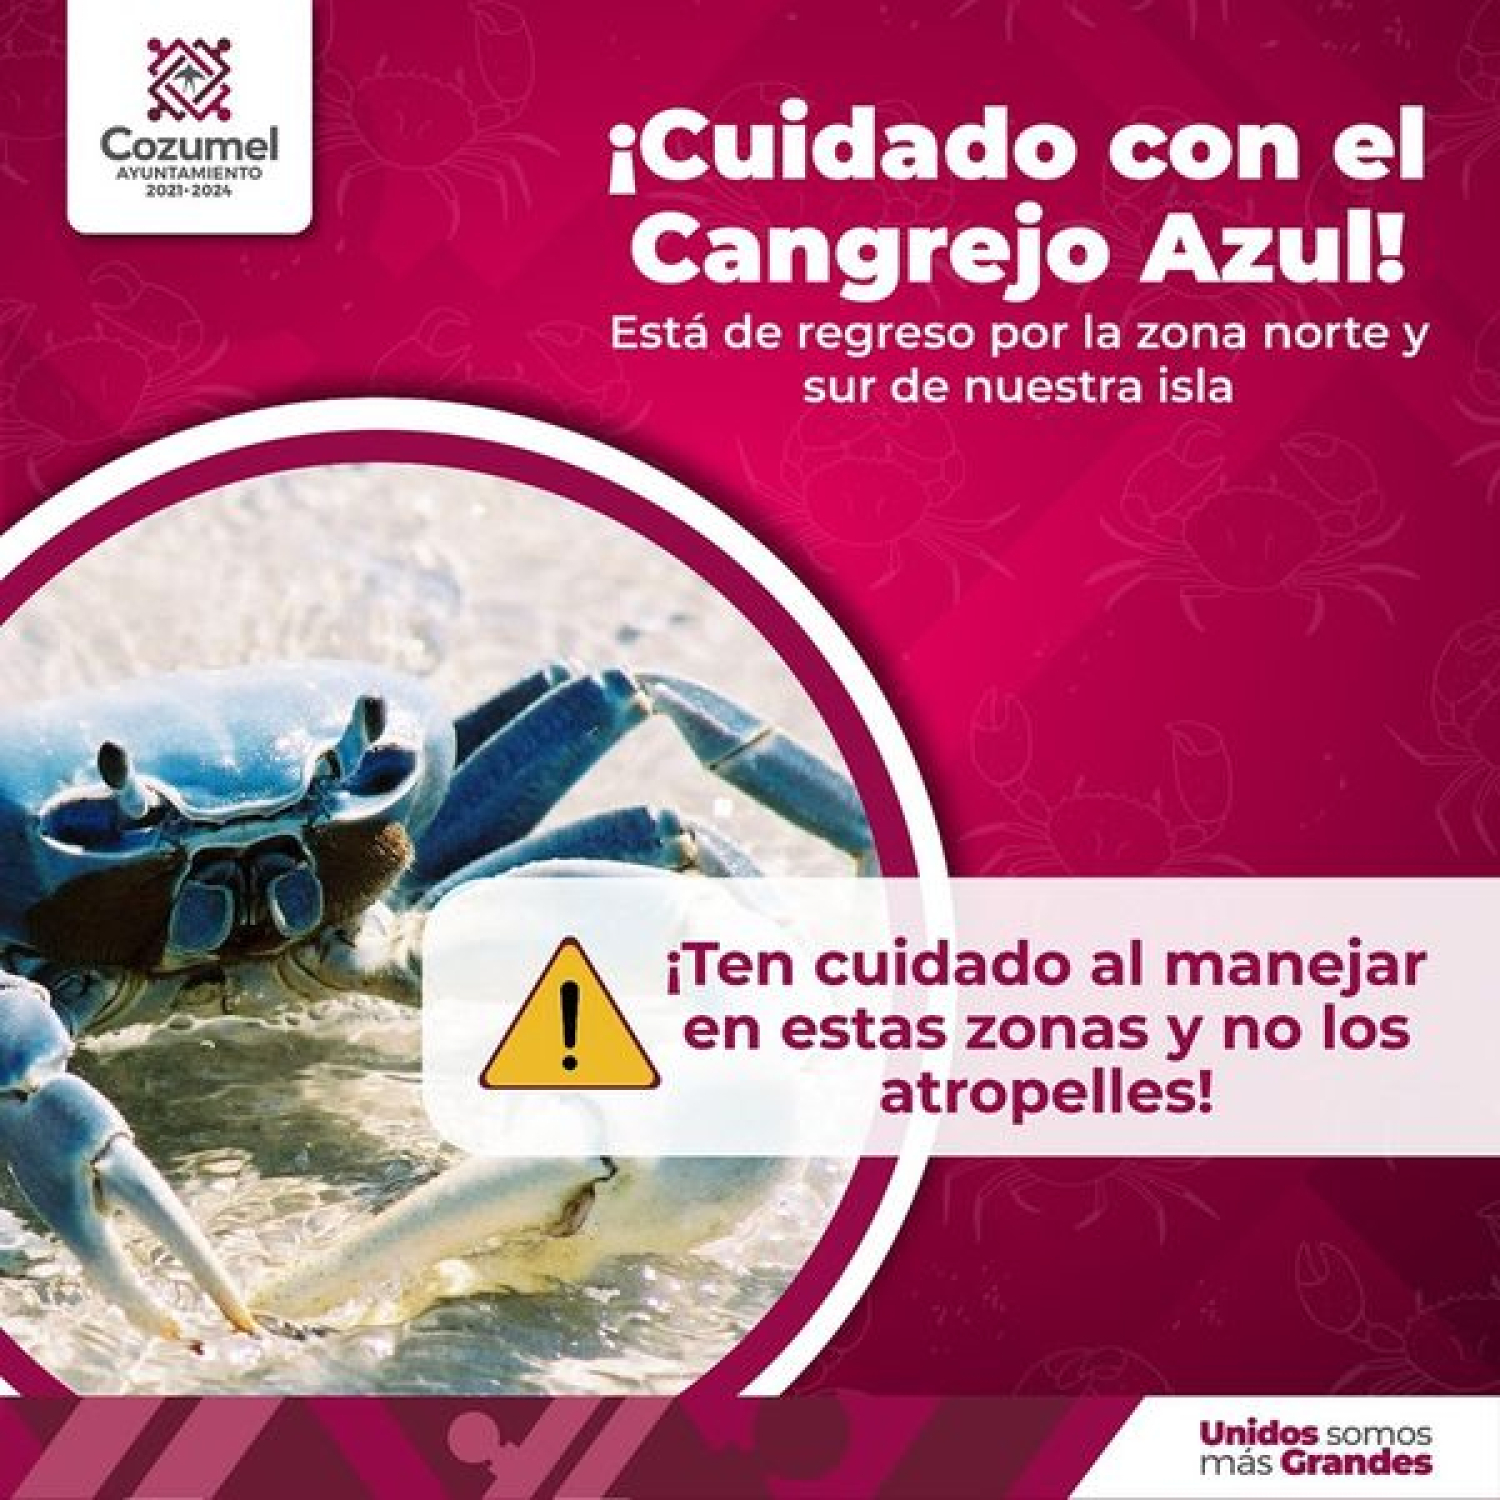 Realizan en Cozumel acciones para la preservación del Cangrejo Azul, especie en riesgo